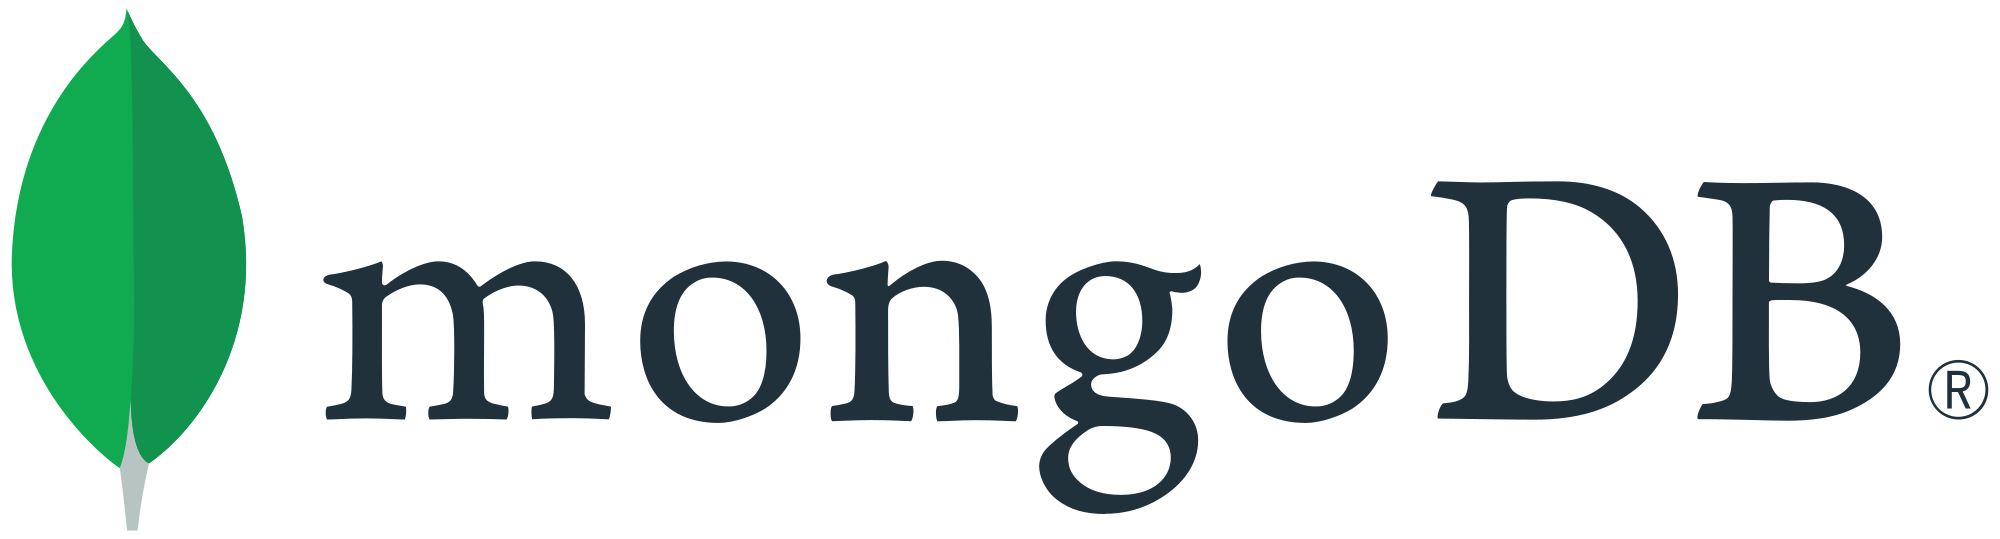 mongodb_logo.png